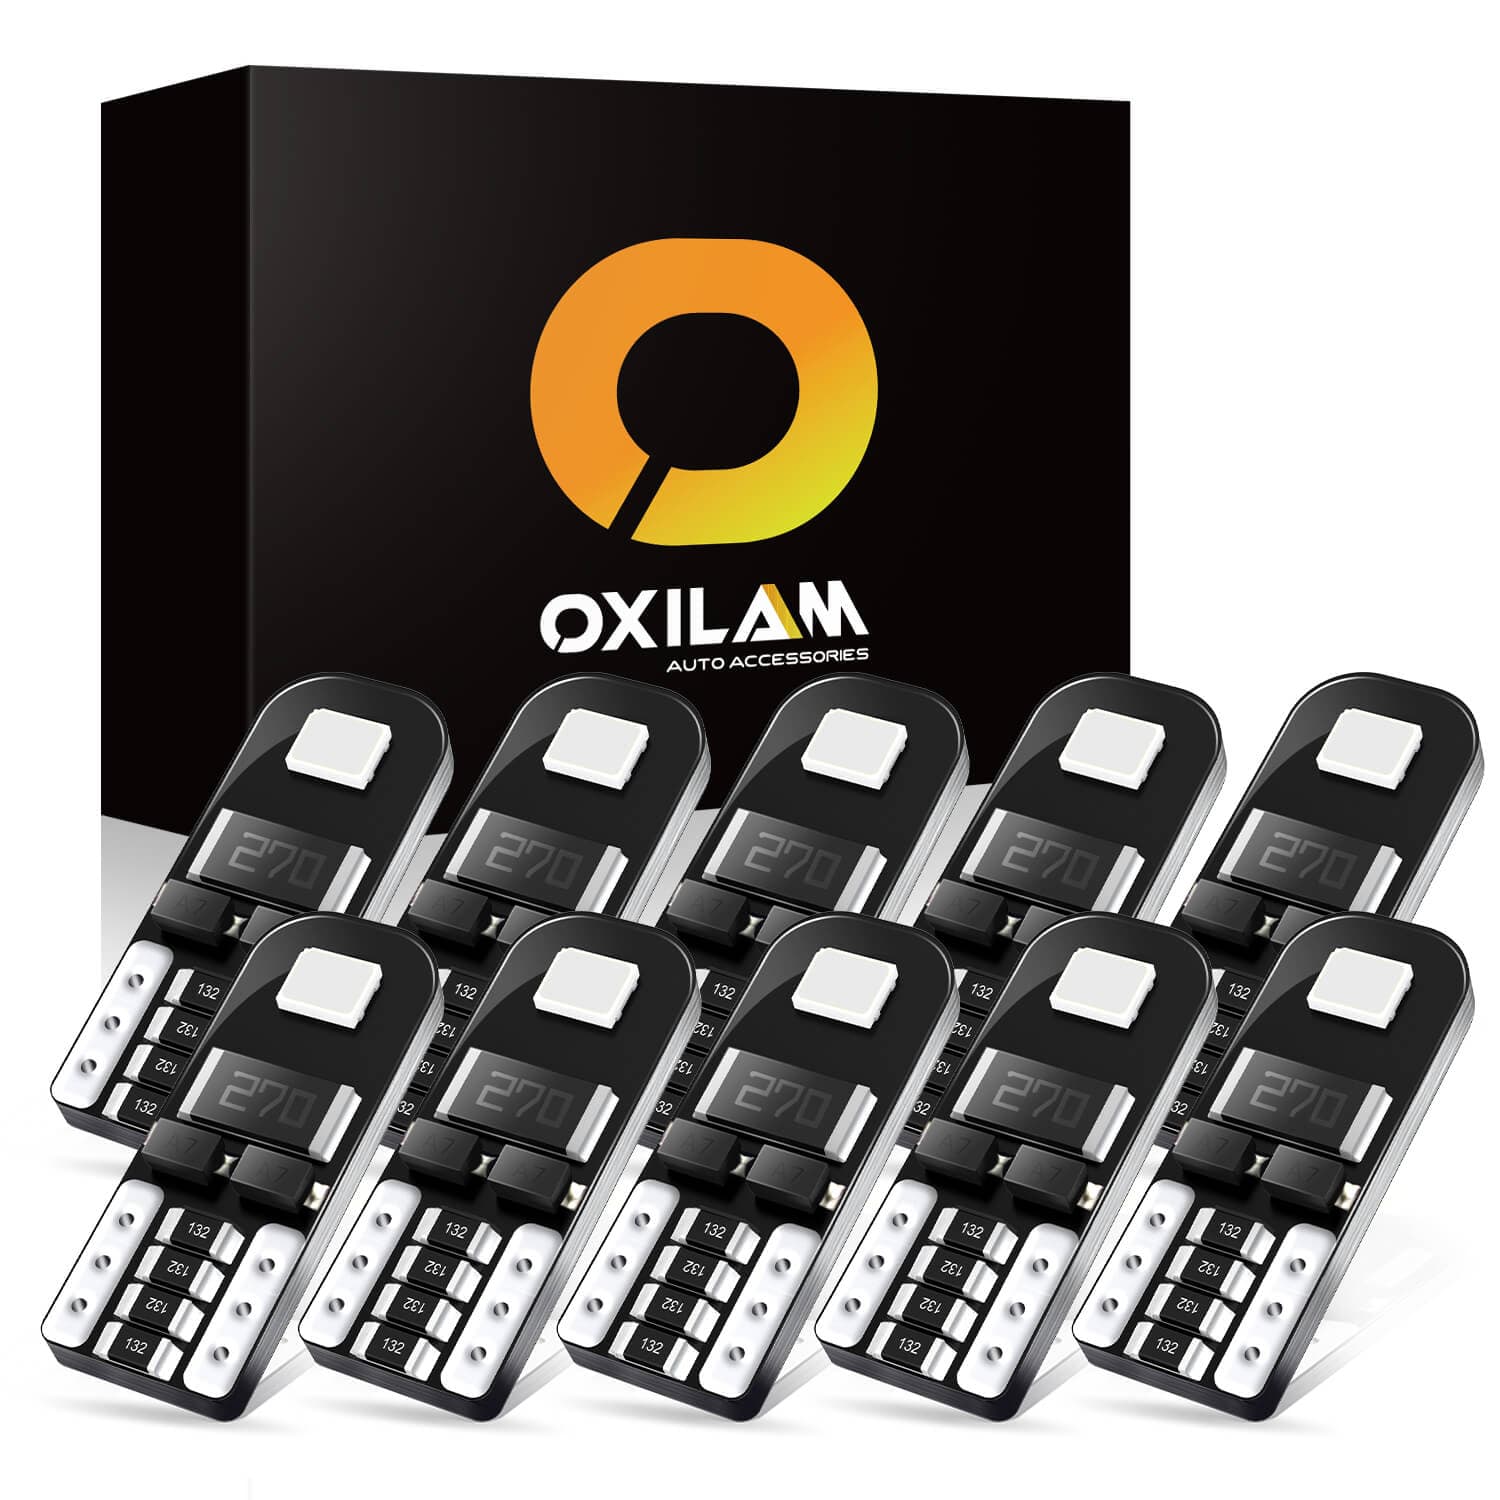 OXILAM 194 LED Bulbs Ultra Blue 168 2825 W5W T10 Super Bright Interior -  Oxilam